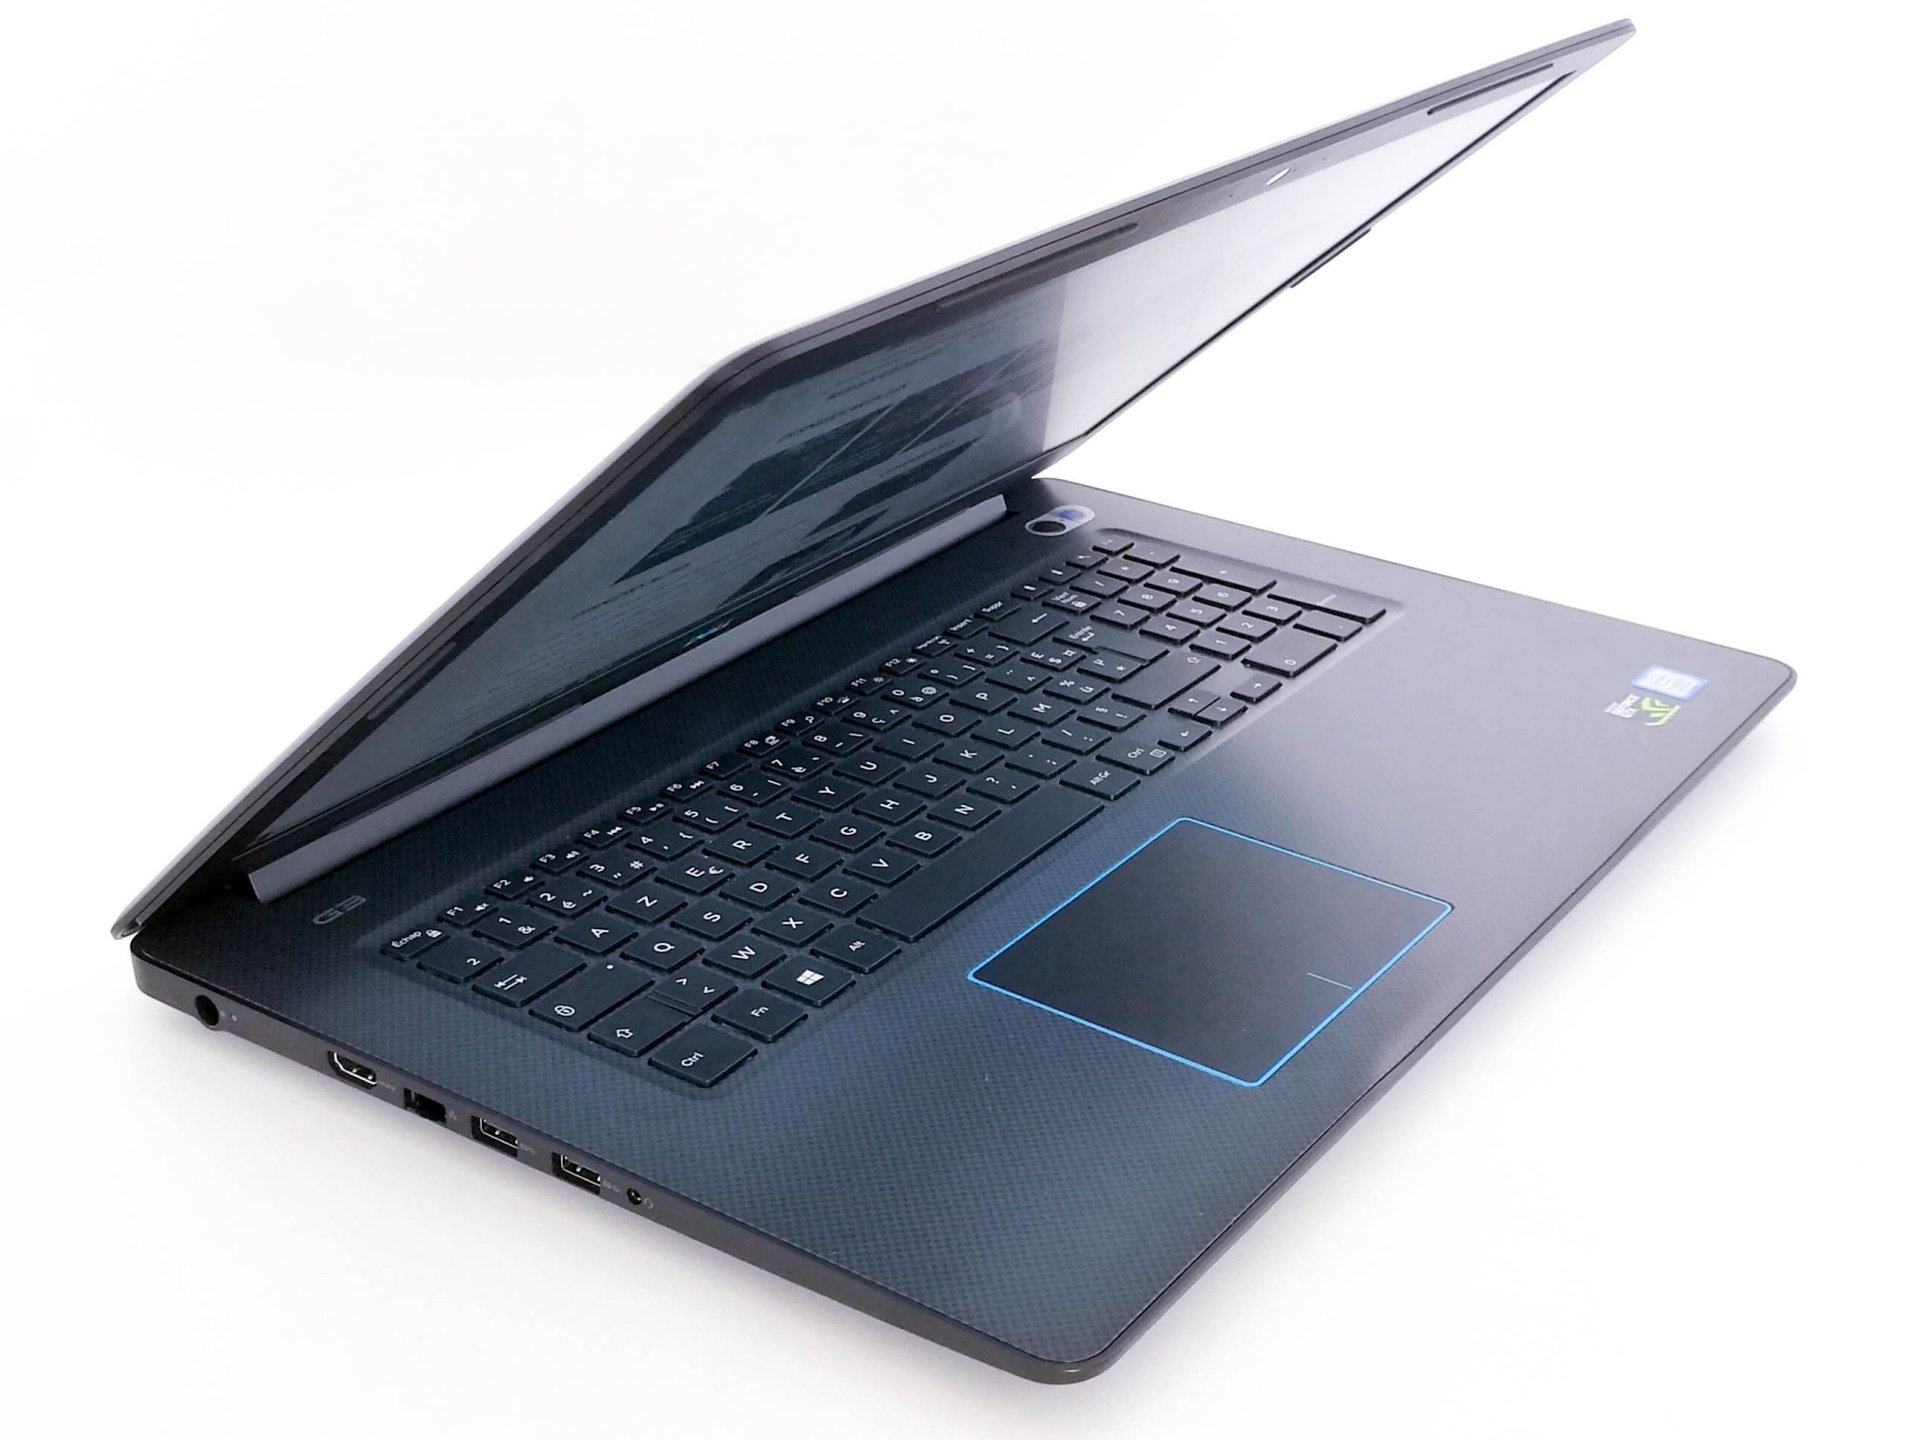 Image 1 : Test : Dell G3 17, un notebook gaming qui n'en a que le nom